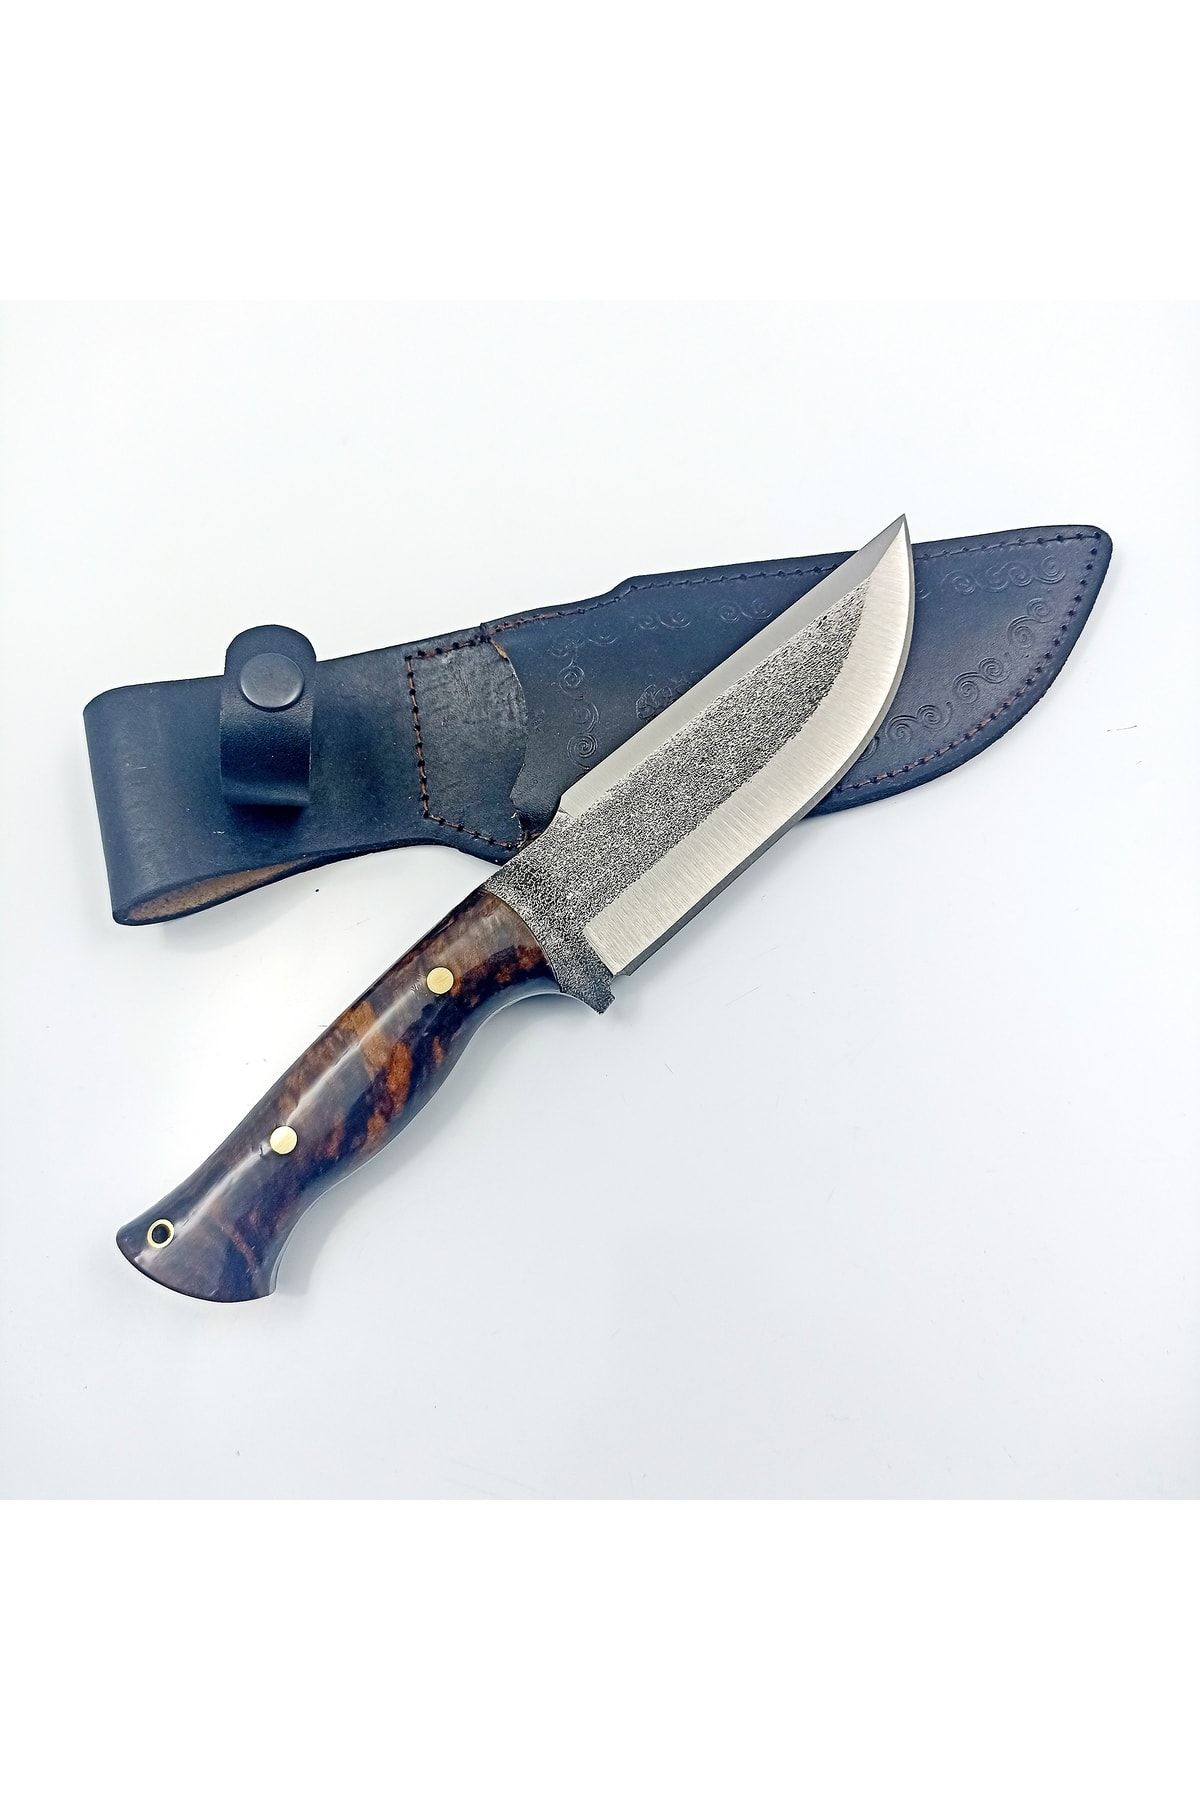 göcen 5160 Karbon Çelikten Hakiki El Dövmesi Avcı Bıçağı , Outdoor Bıçak , Bushcraft Bıçak . Kamp Bıçağı